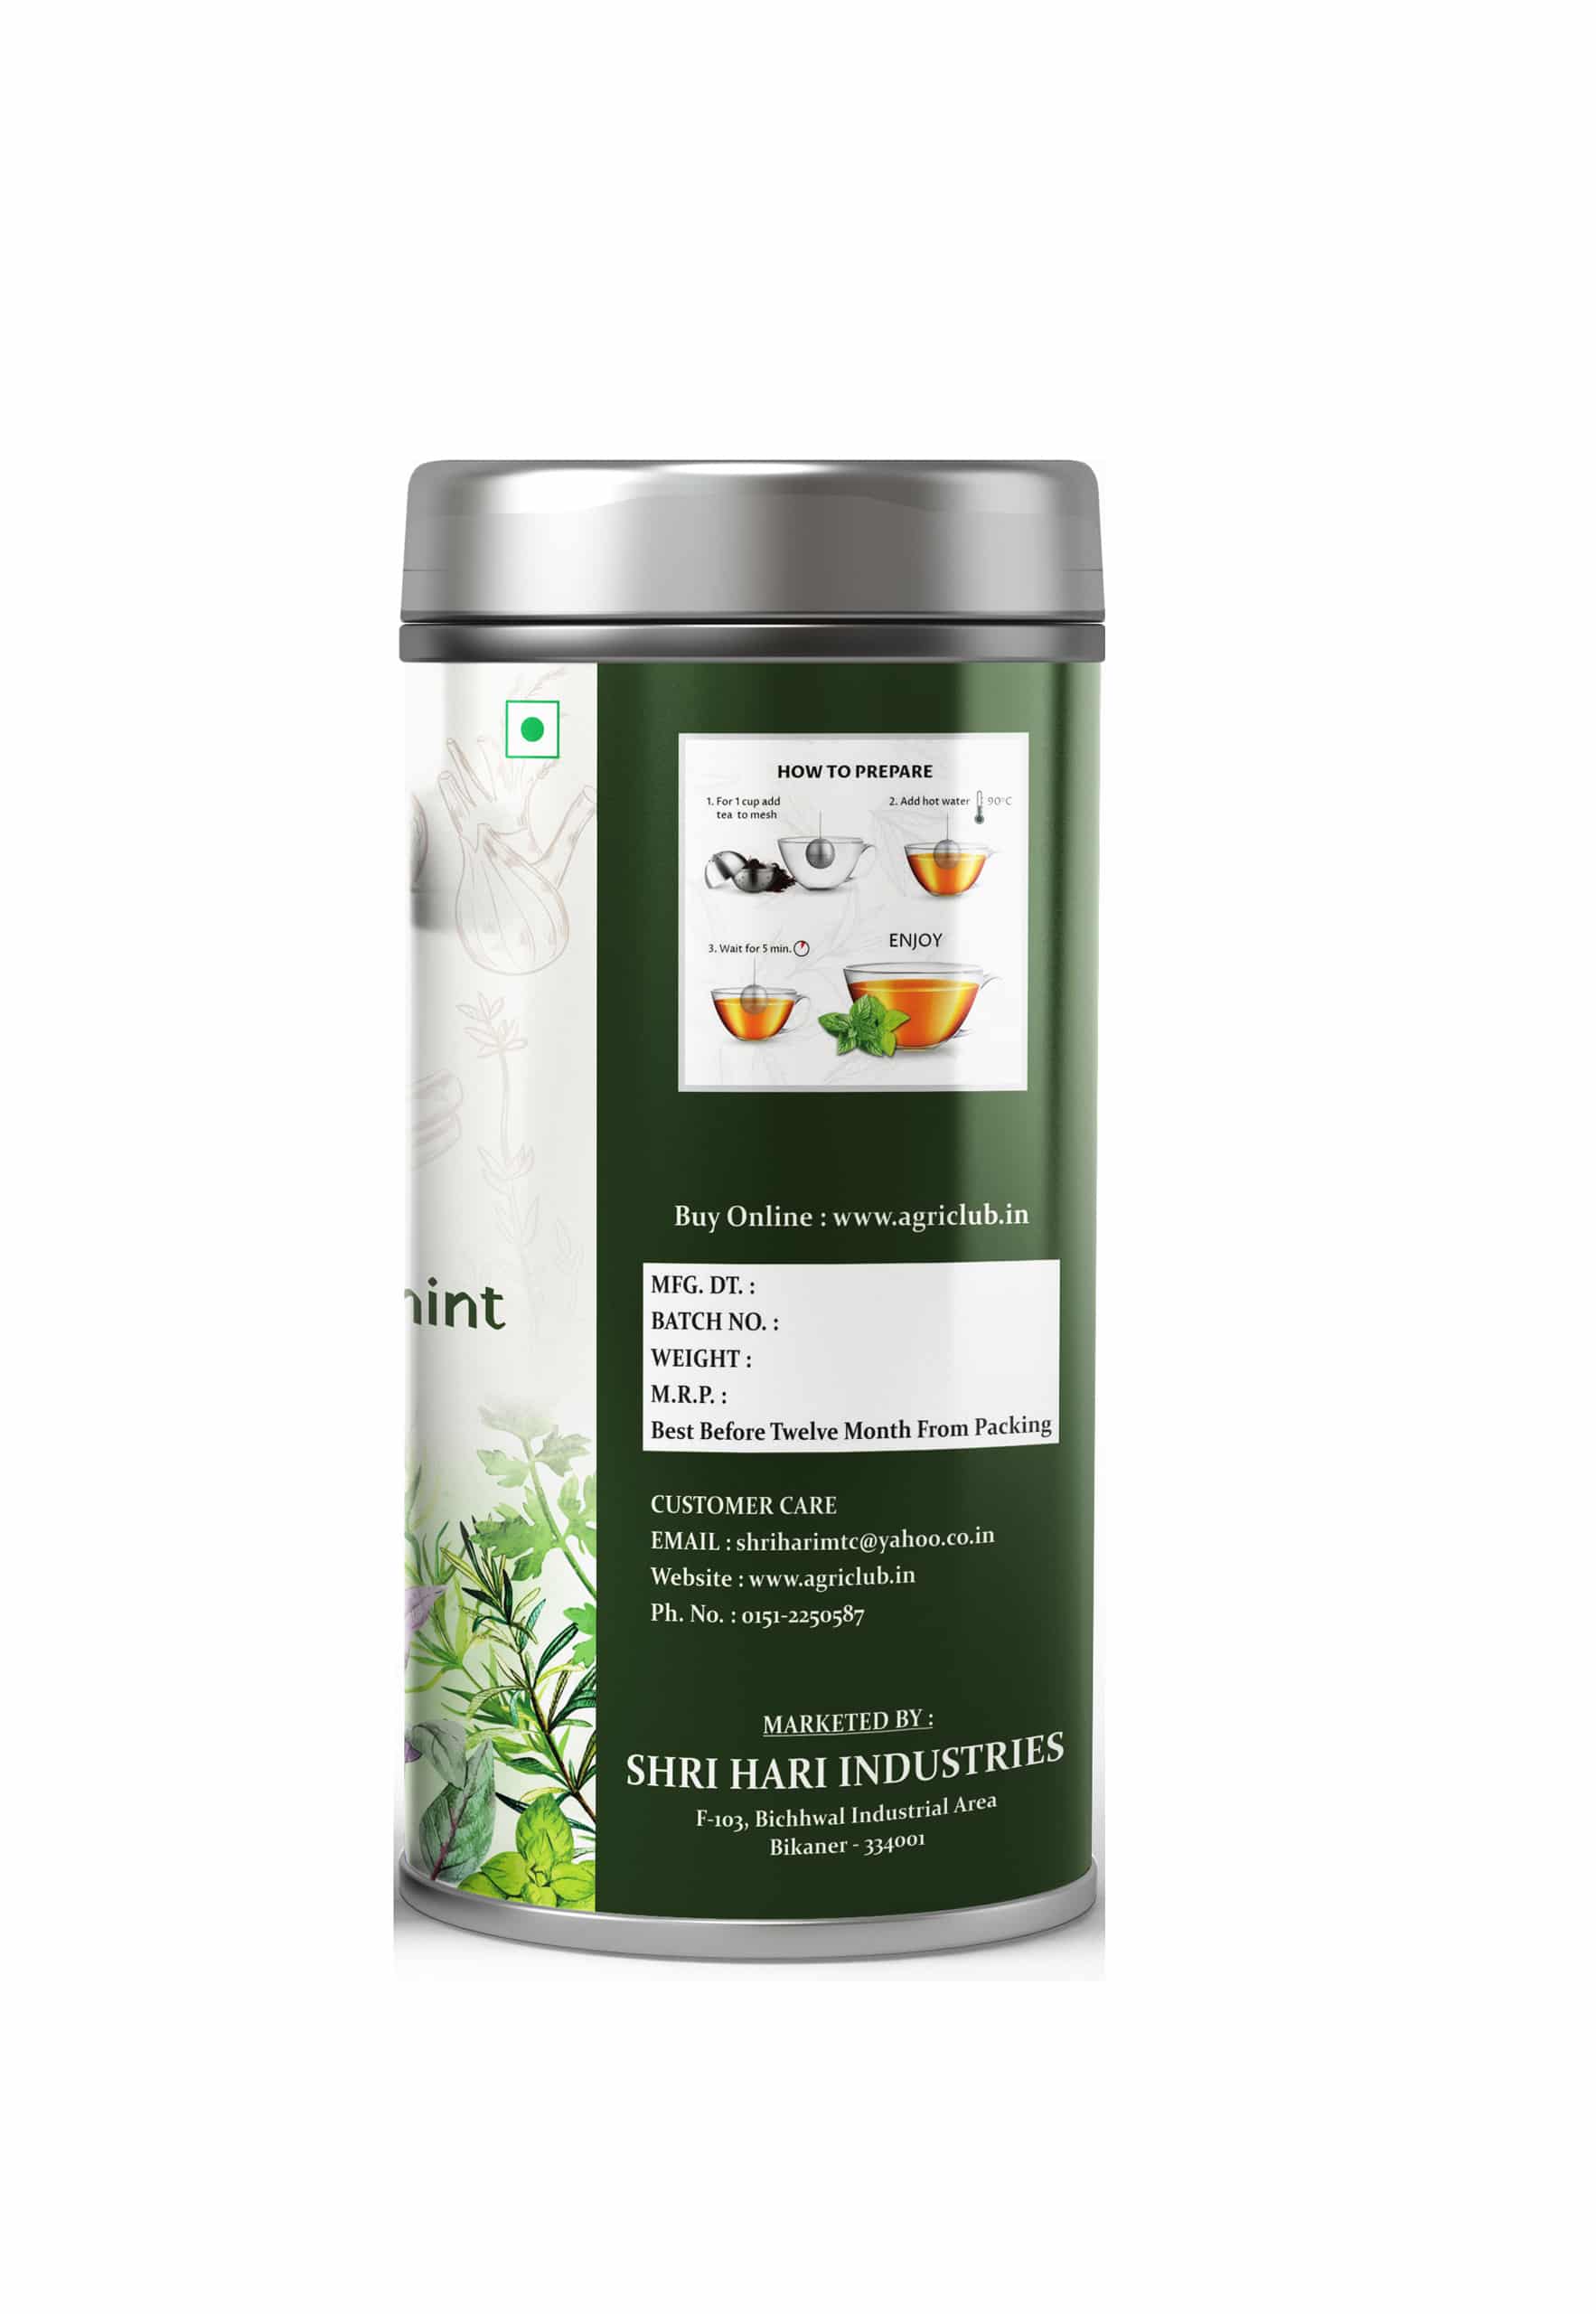 Herbs Tea Tulsi+ Moringa + Peppermint 50 GM